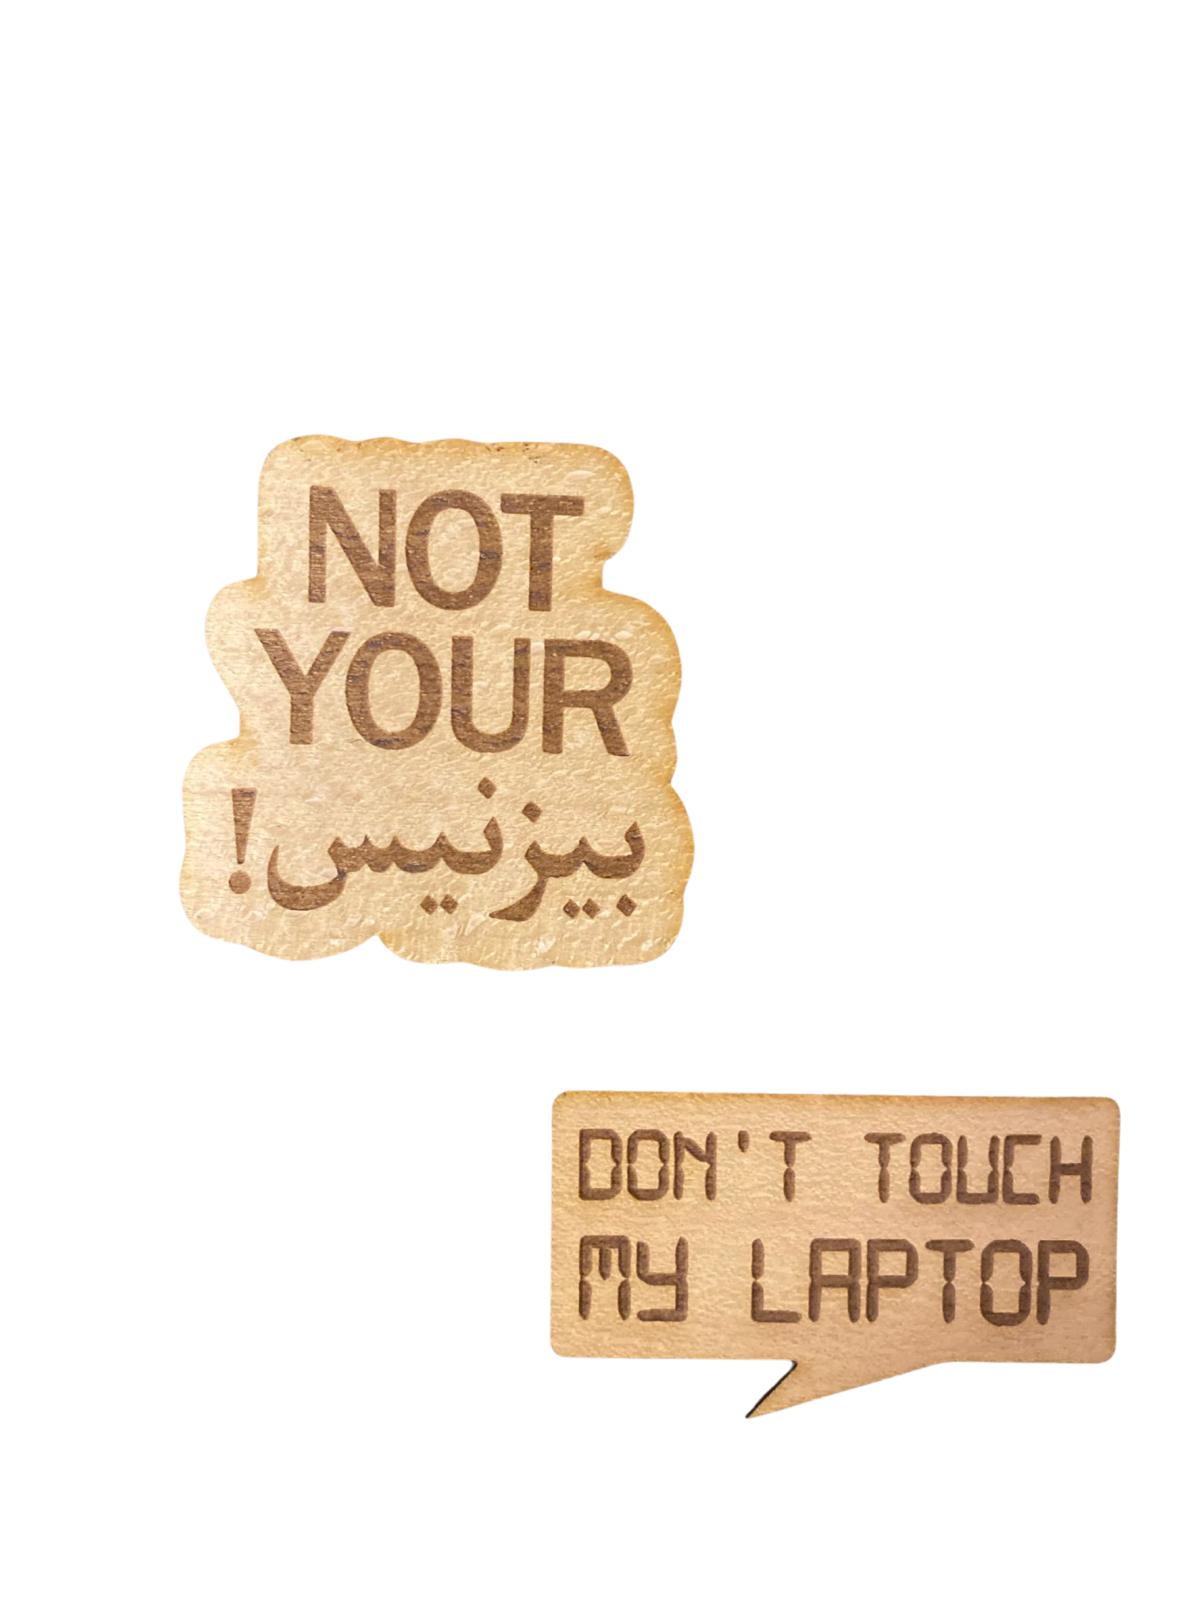 ملصق Not your بيزنس - don't touch my laptop